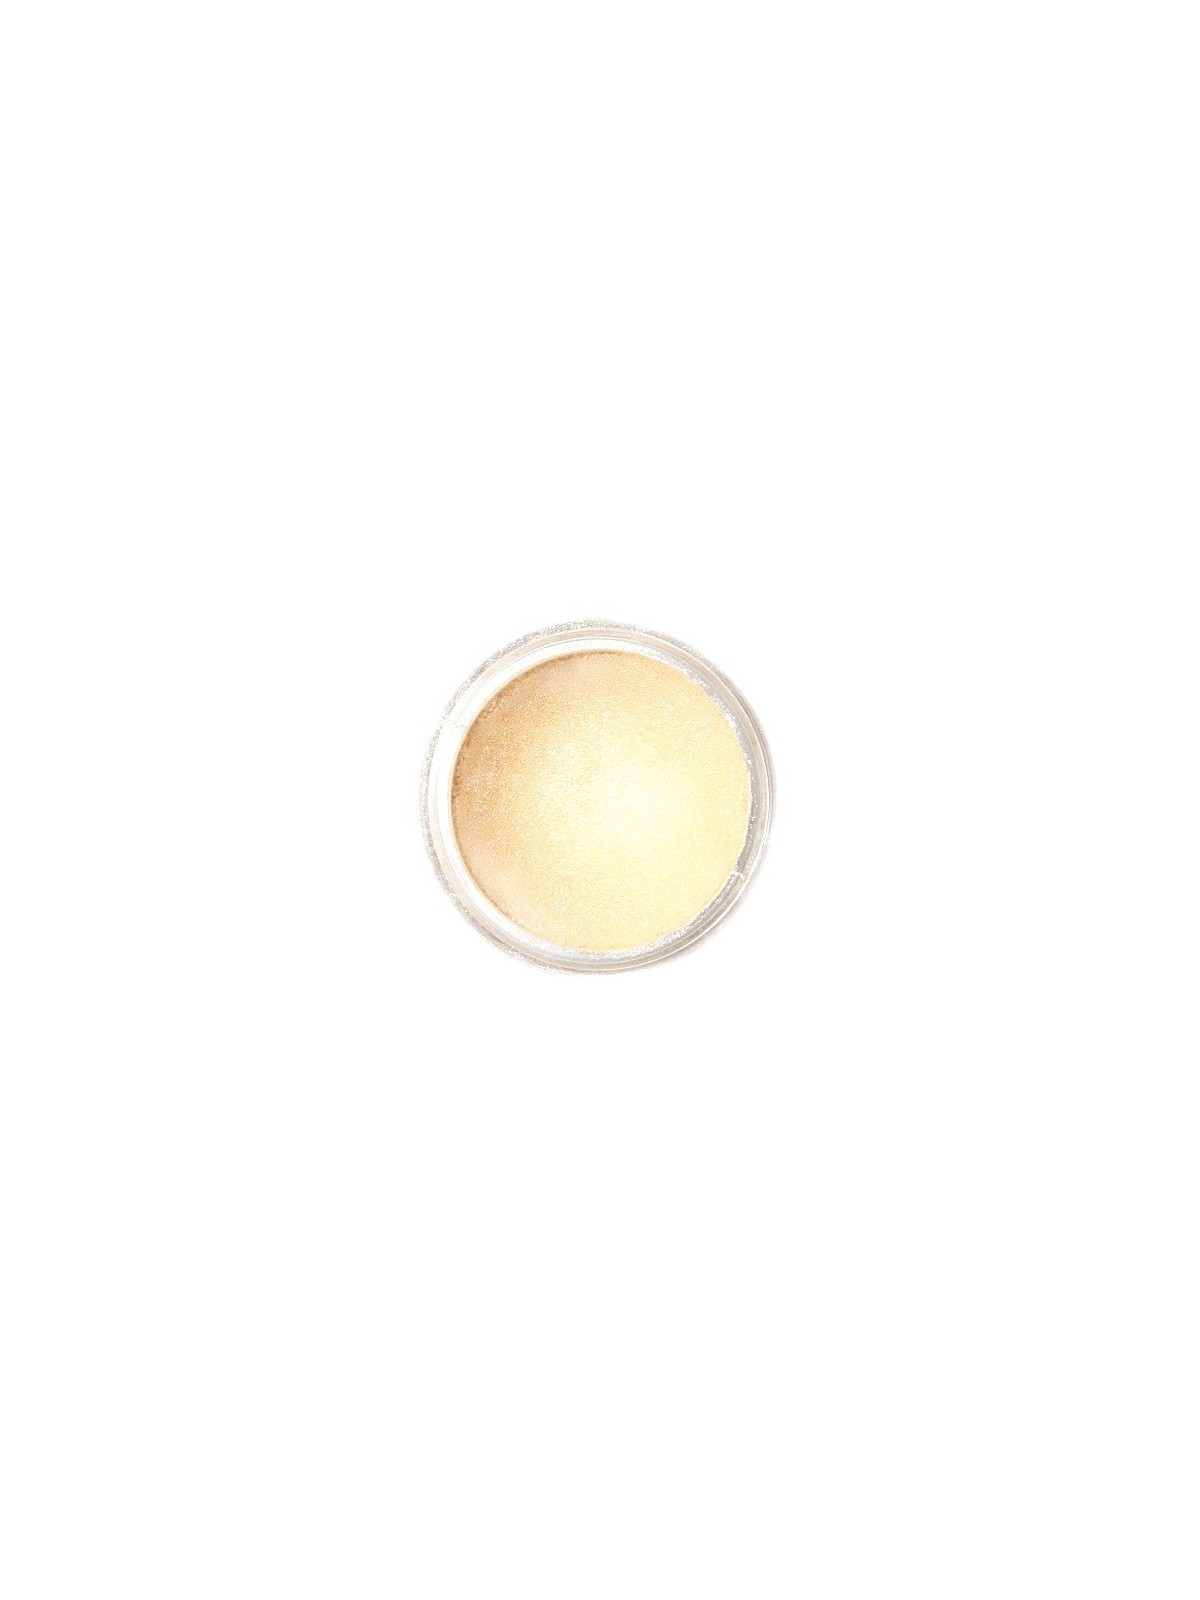 Dekoratívna prachová perleťová farba Fractal - Champagne Gold, Aranysárga (3 g)